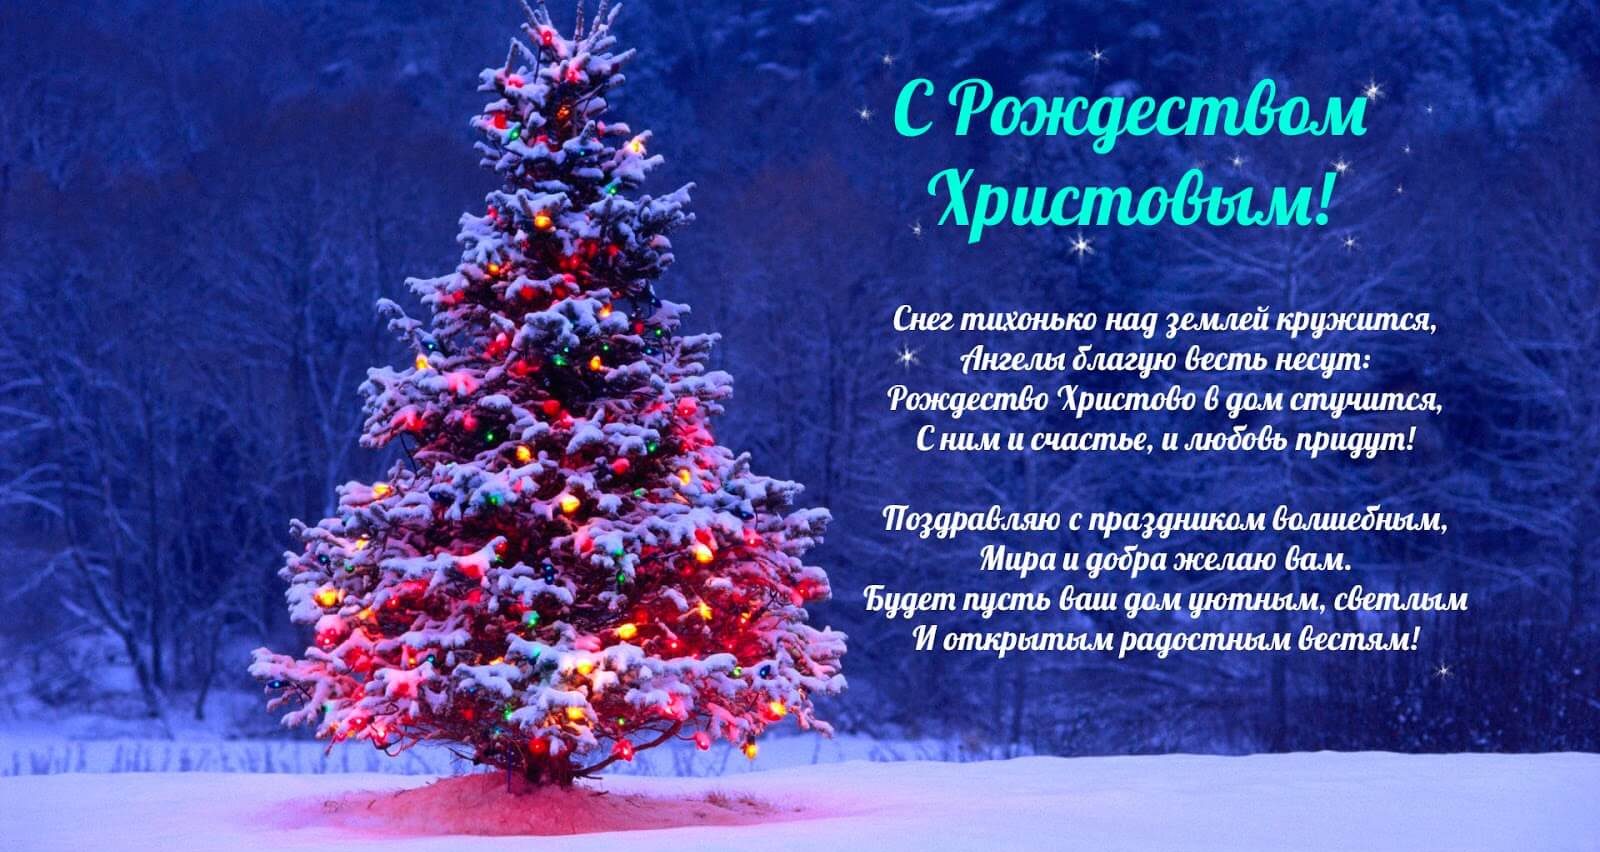 Поздравление С Новым Годом И Рождеством Христовым Коллег